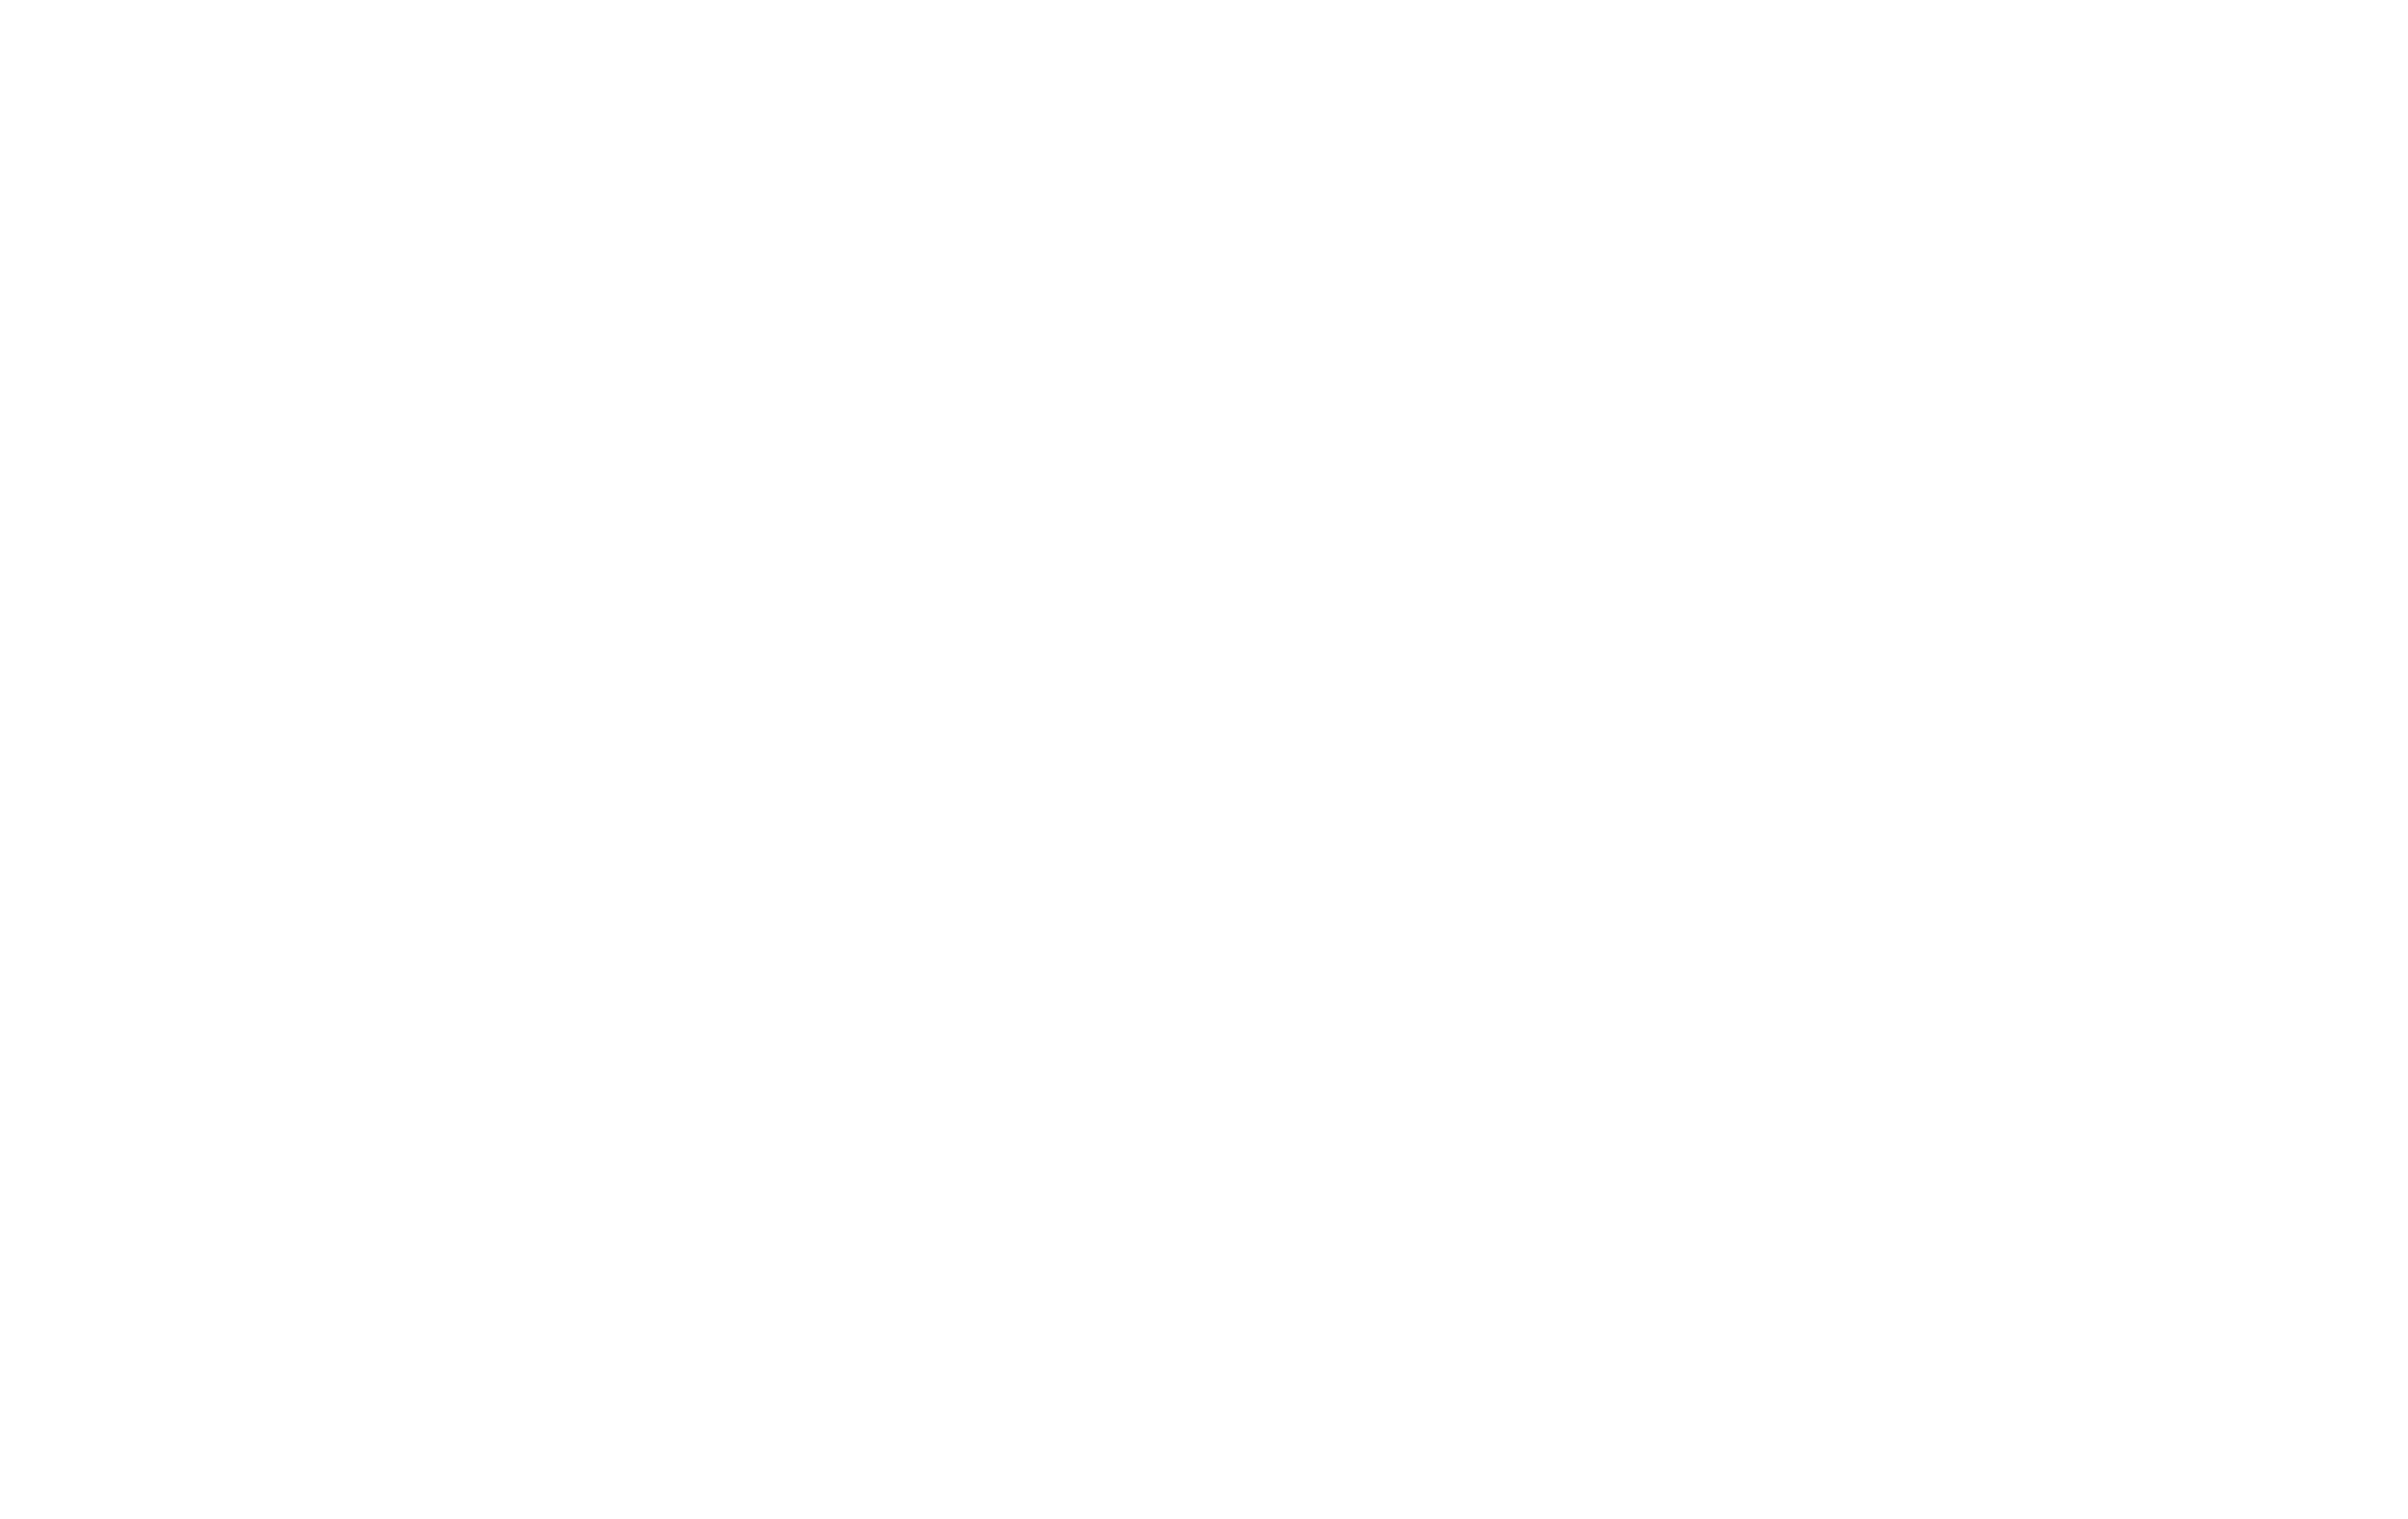 Prison Break Brewery